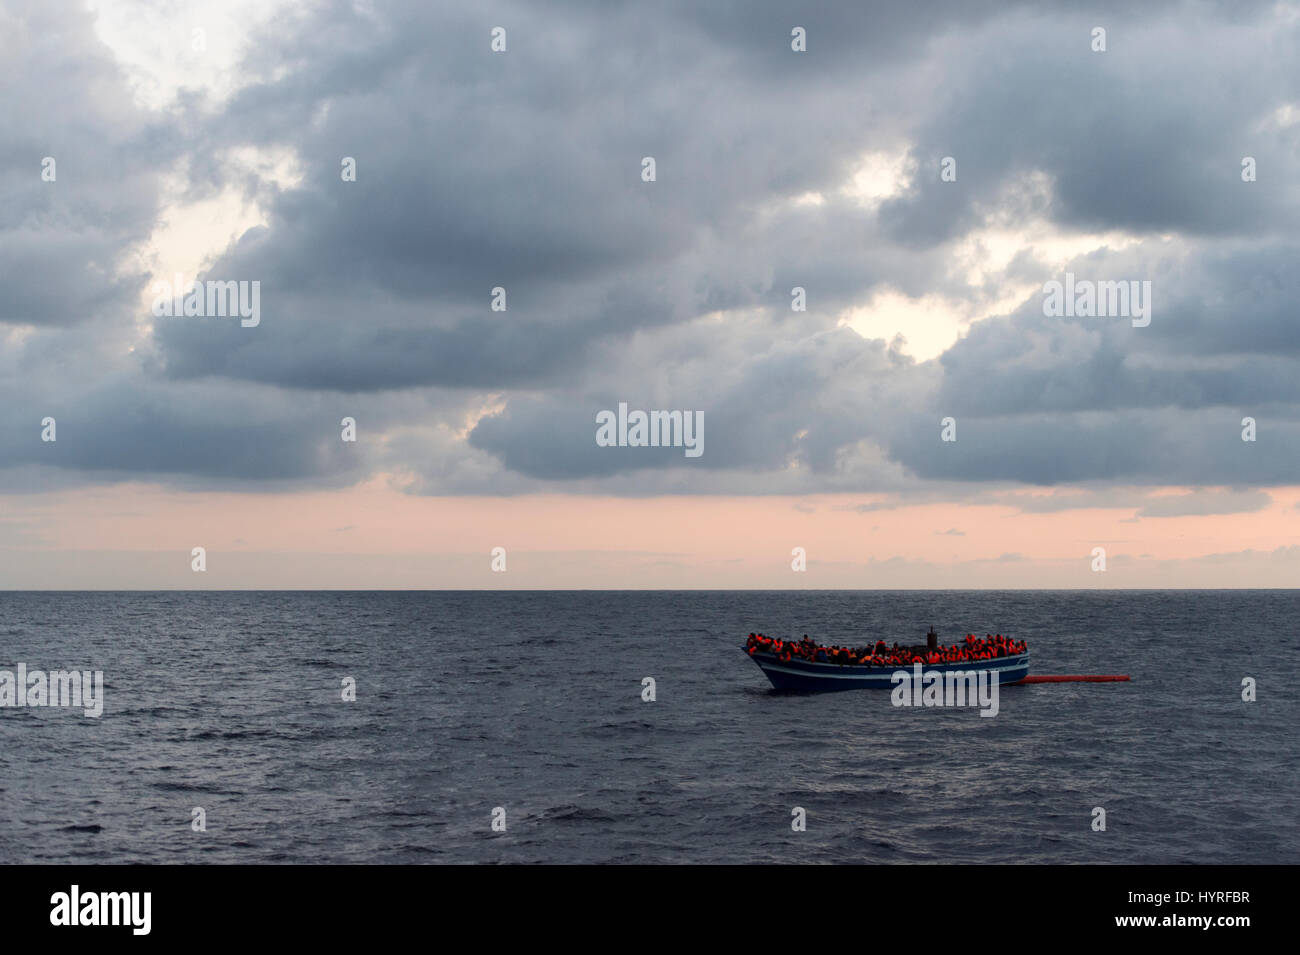 Un 17 metri lungo la barca di legno, trovati nella mattina intorno alle 15 miglia nautiche dalla costa libica. 399 persone che sono a bordo stanno tentando di cros Foto Stock